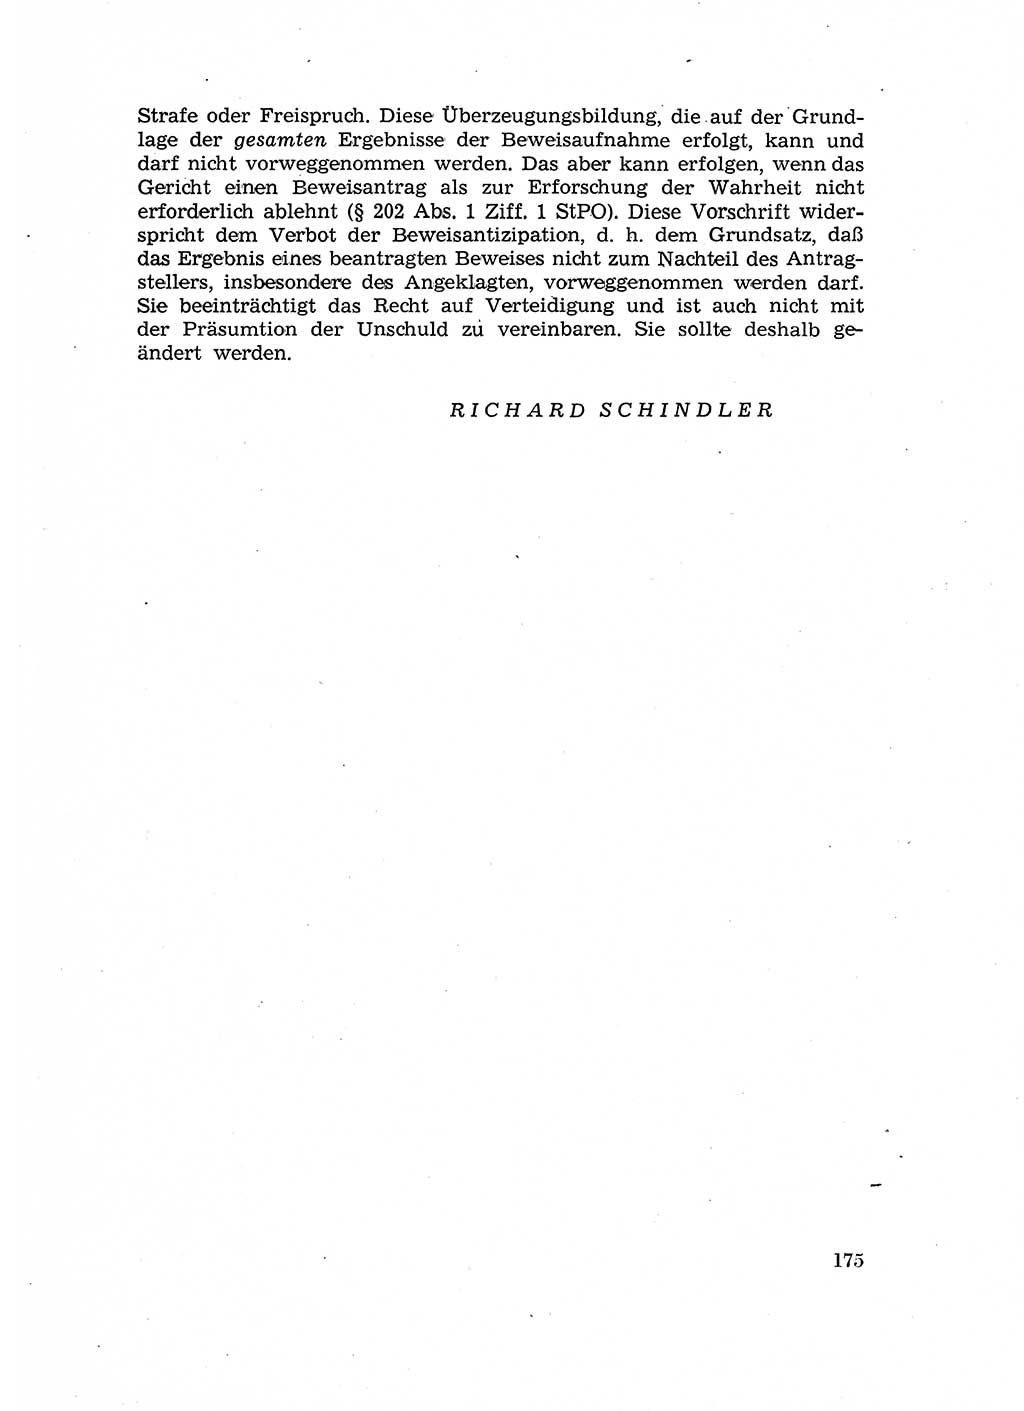 Fragen des Beweisrechts im Strafprozess [Deutsche Demokratische Republik (DDR)] 1956, Seite 175 (Fr. BeweisR. Str.-Proz. DDR 1956, S. 175)